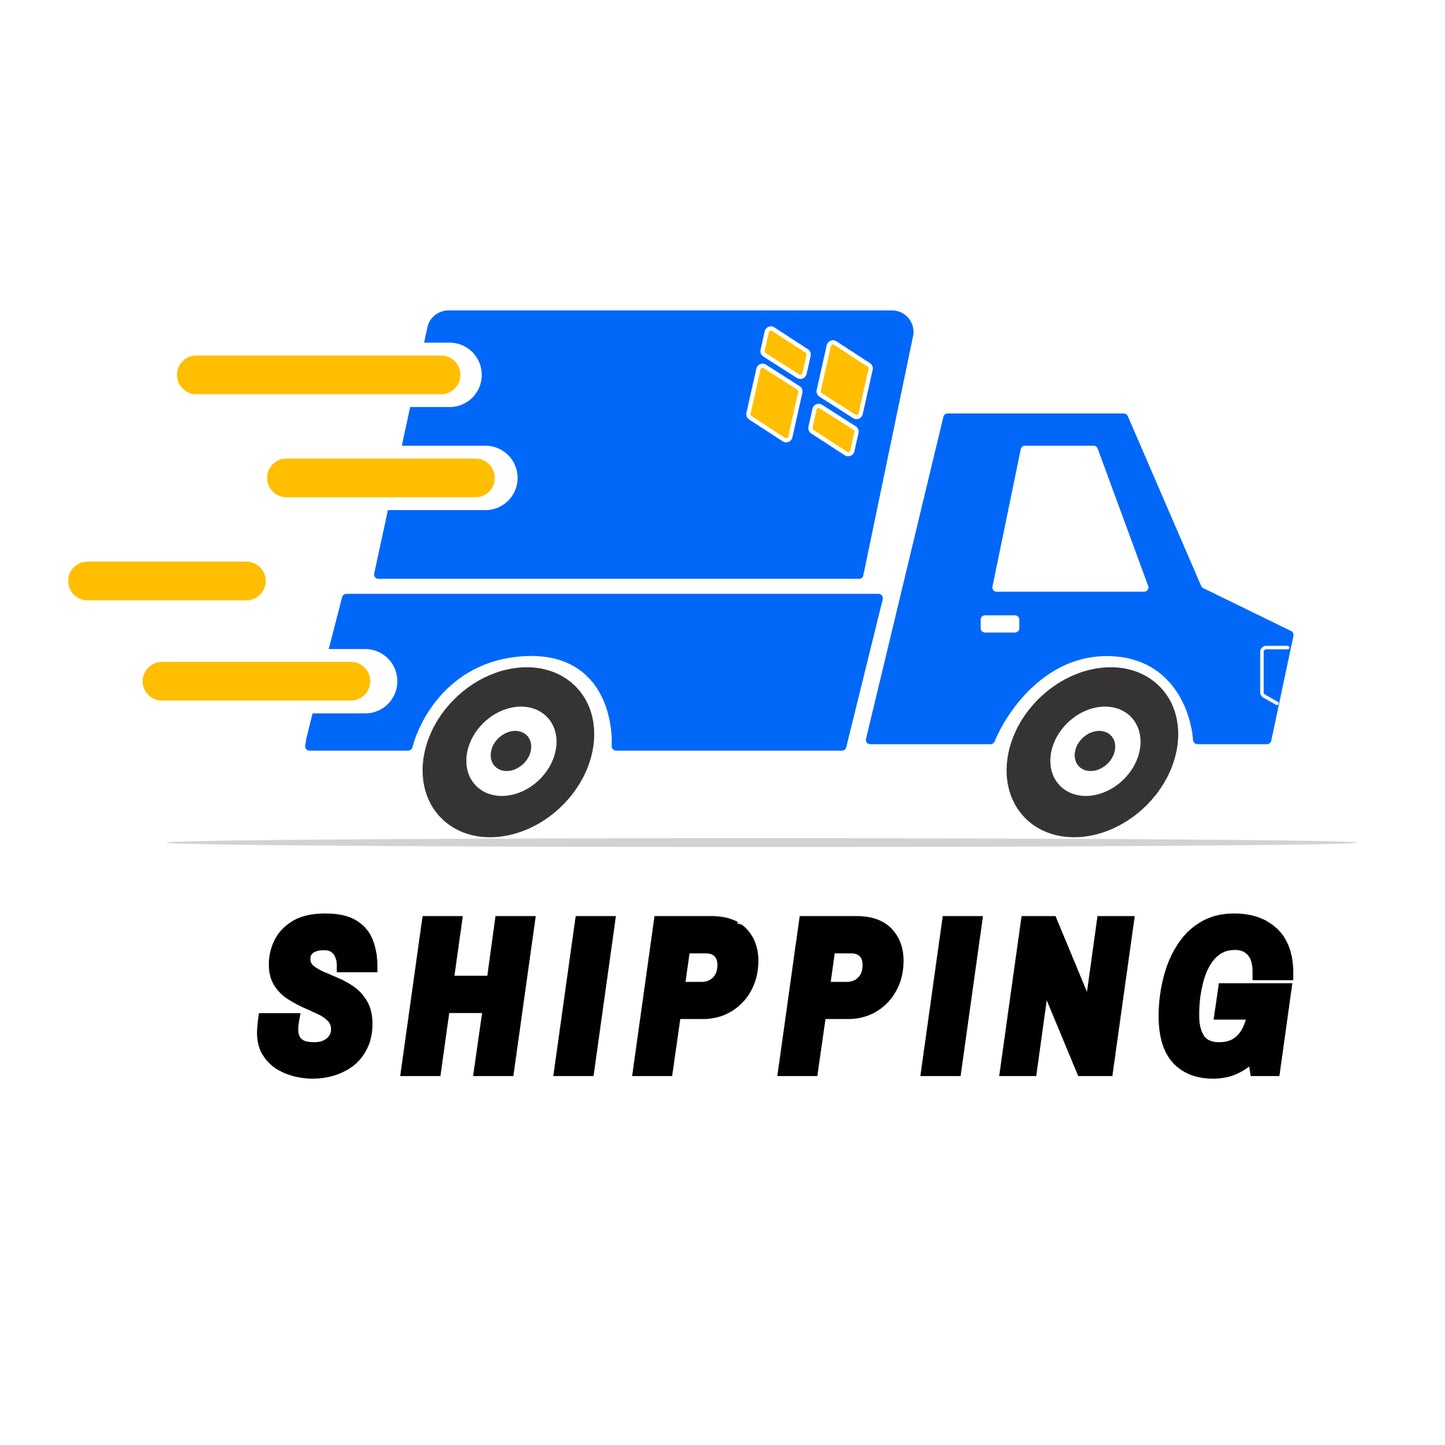 Shipping (Air Models)